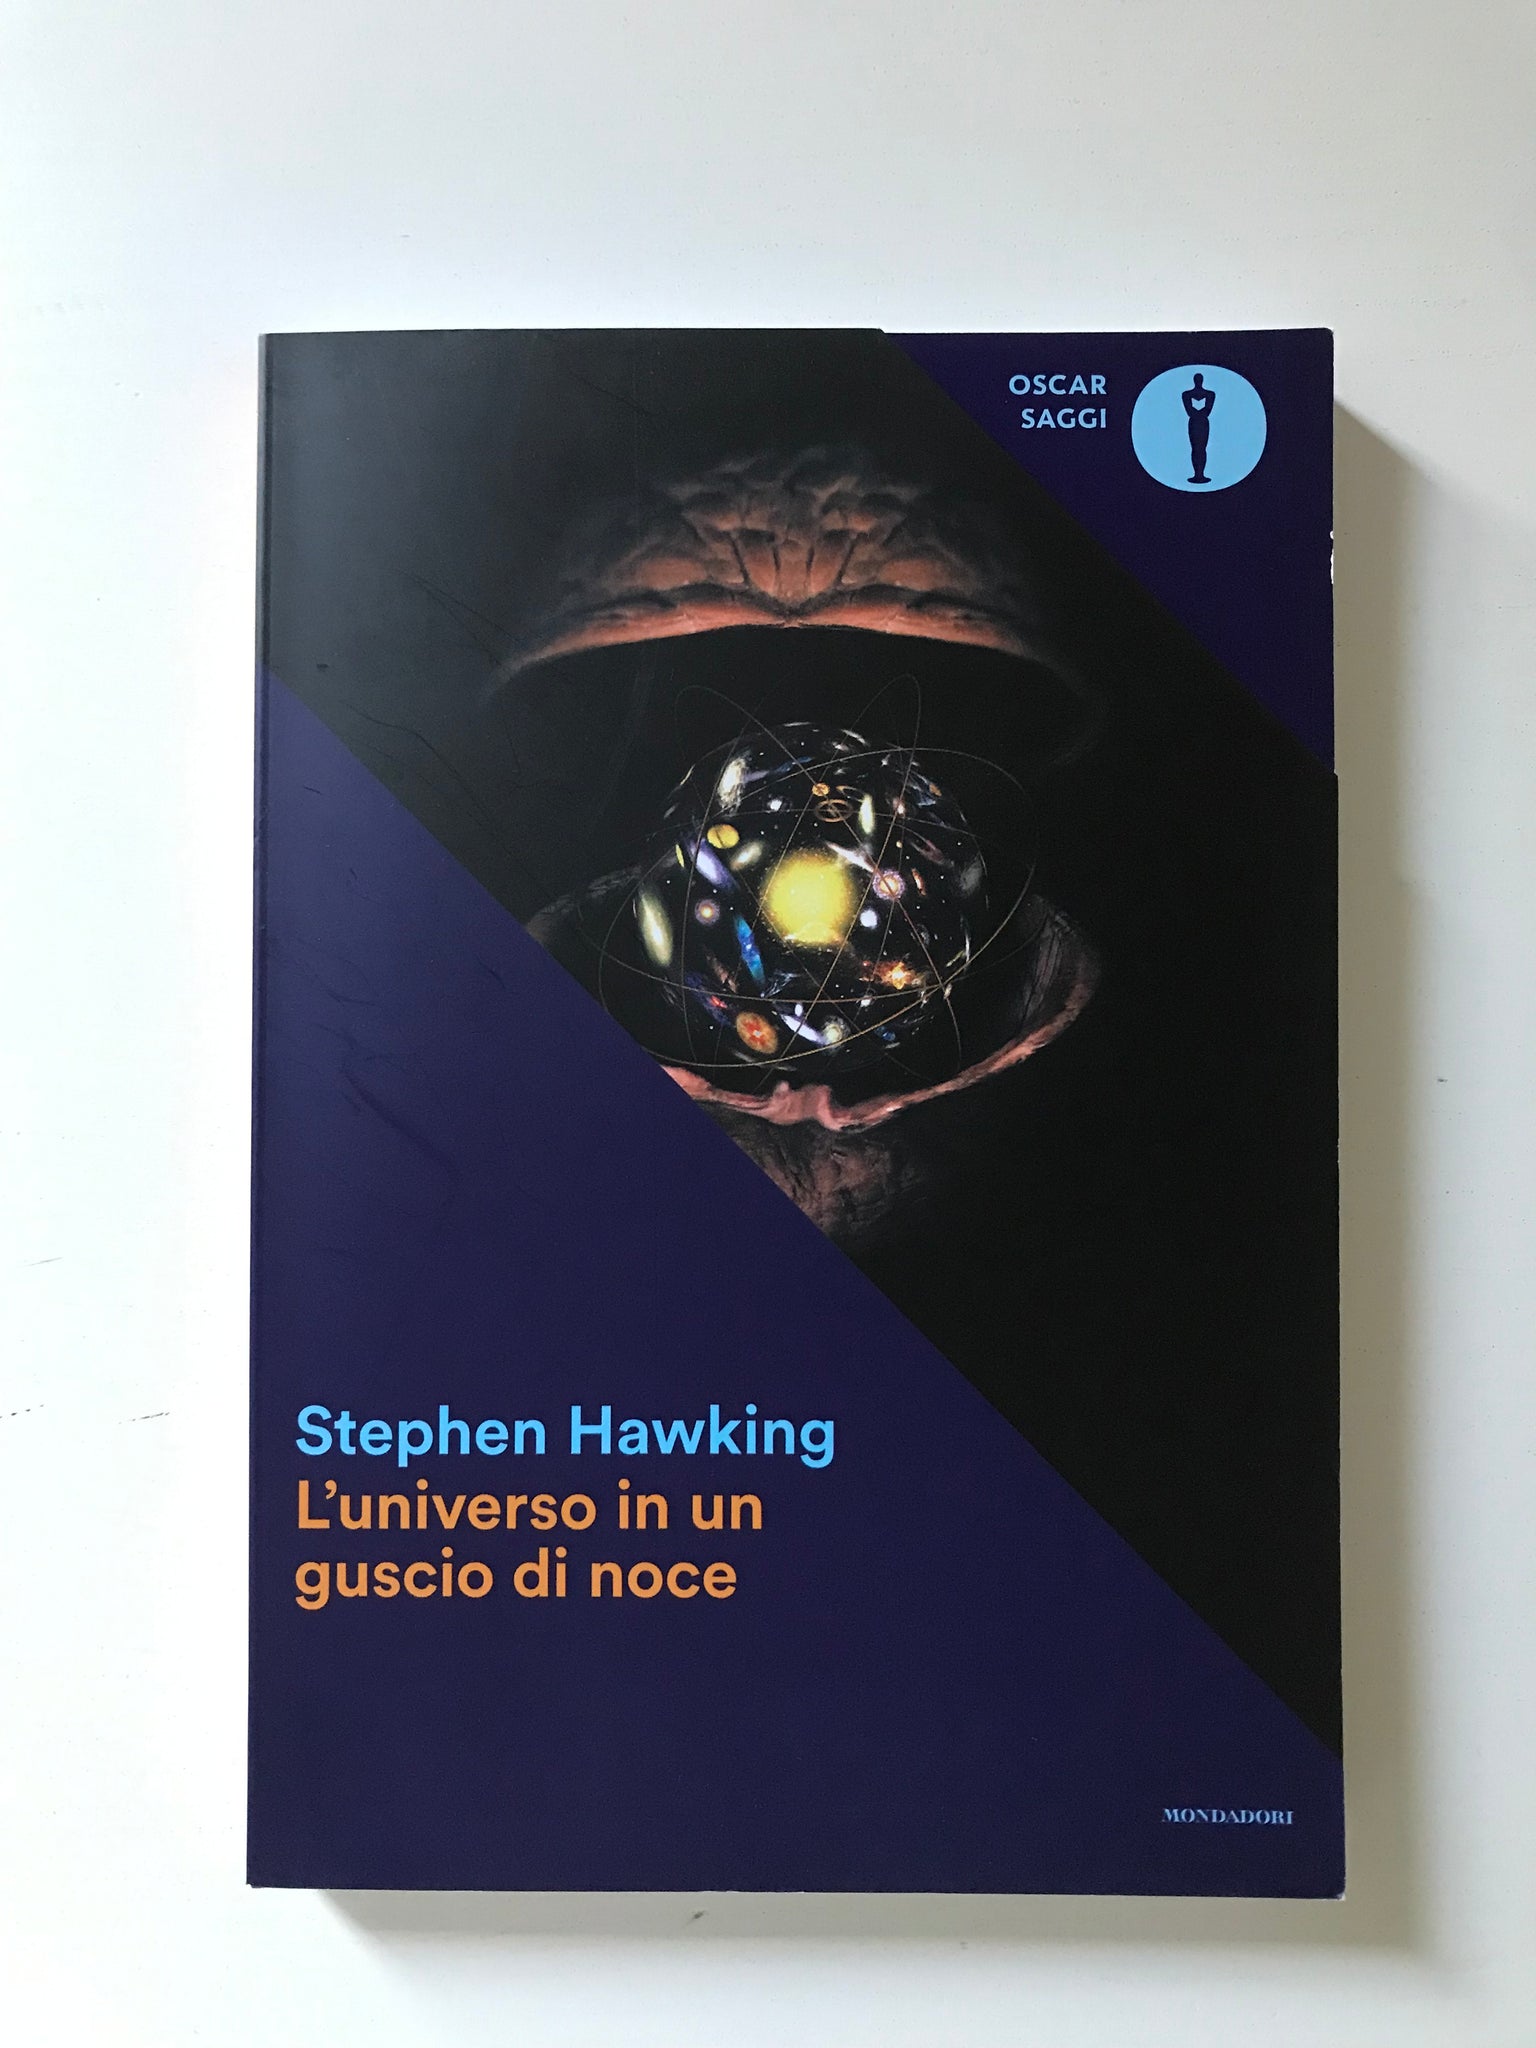 Stephen Hawking - L'universo in un guscio di noce